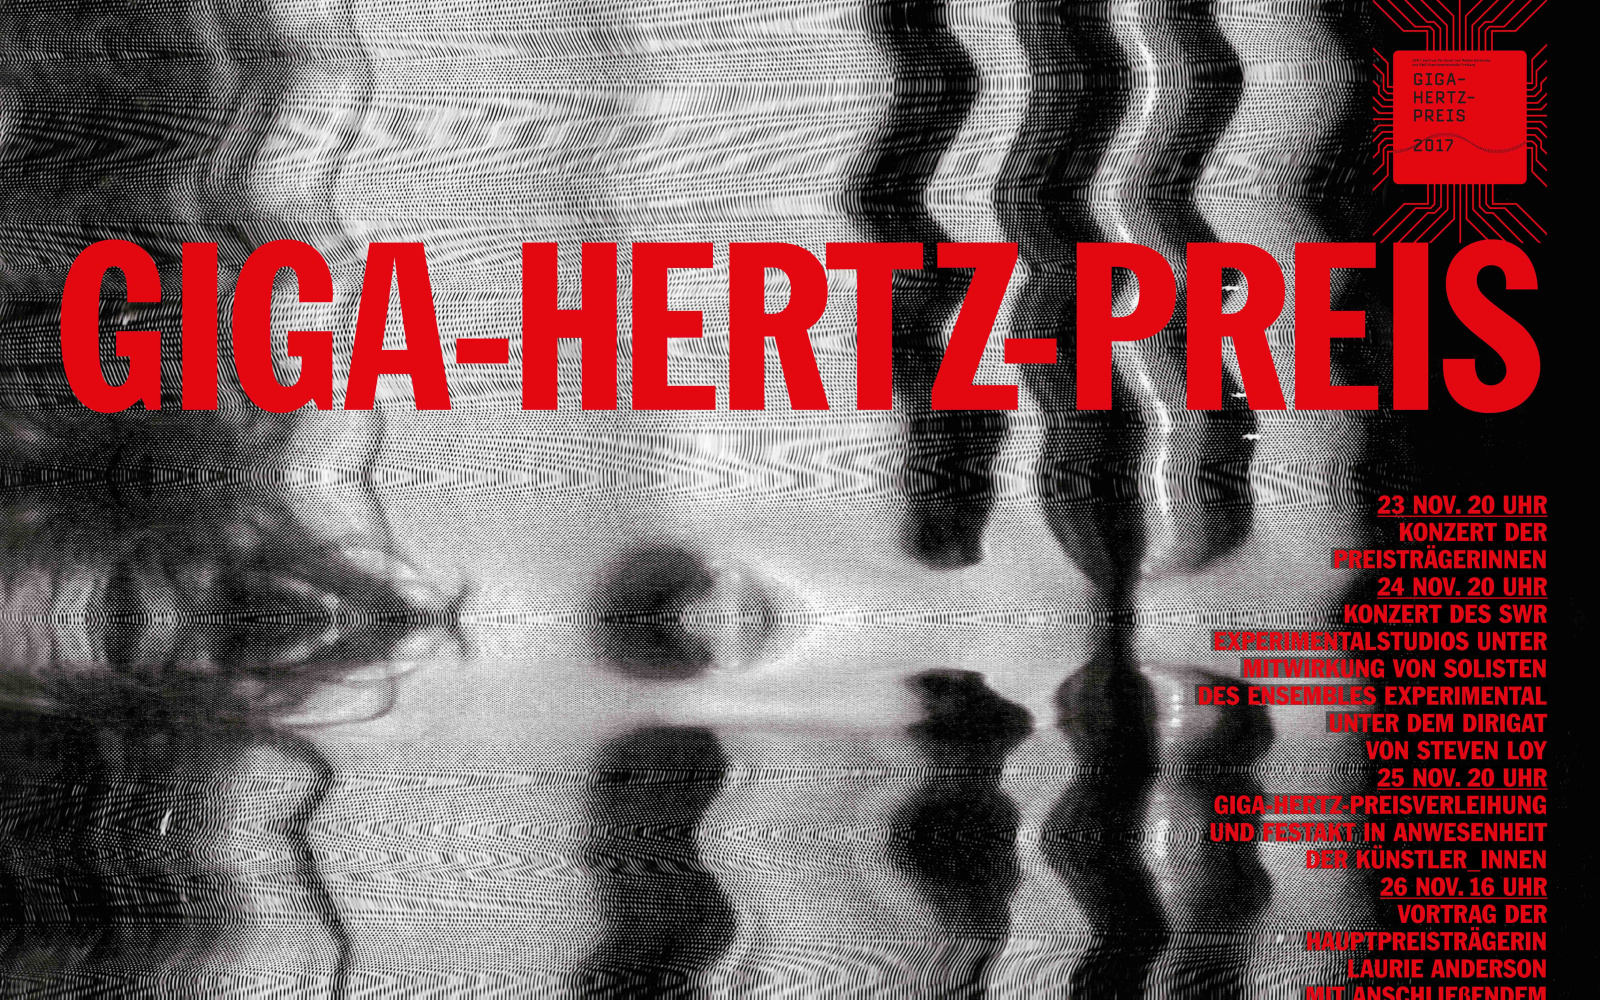 Web banner Giga-Hertz Award 2017 at ZKM | Karlsruhe